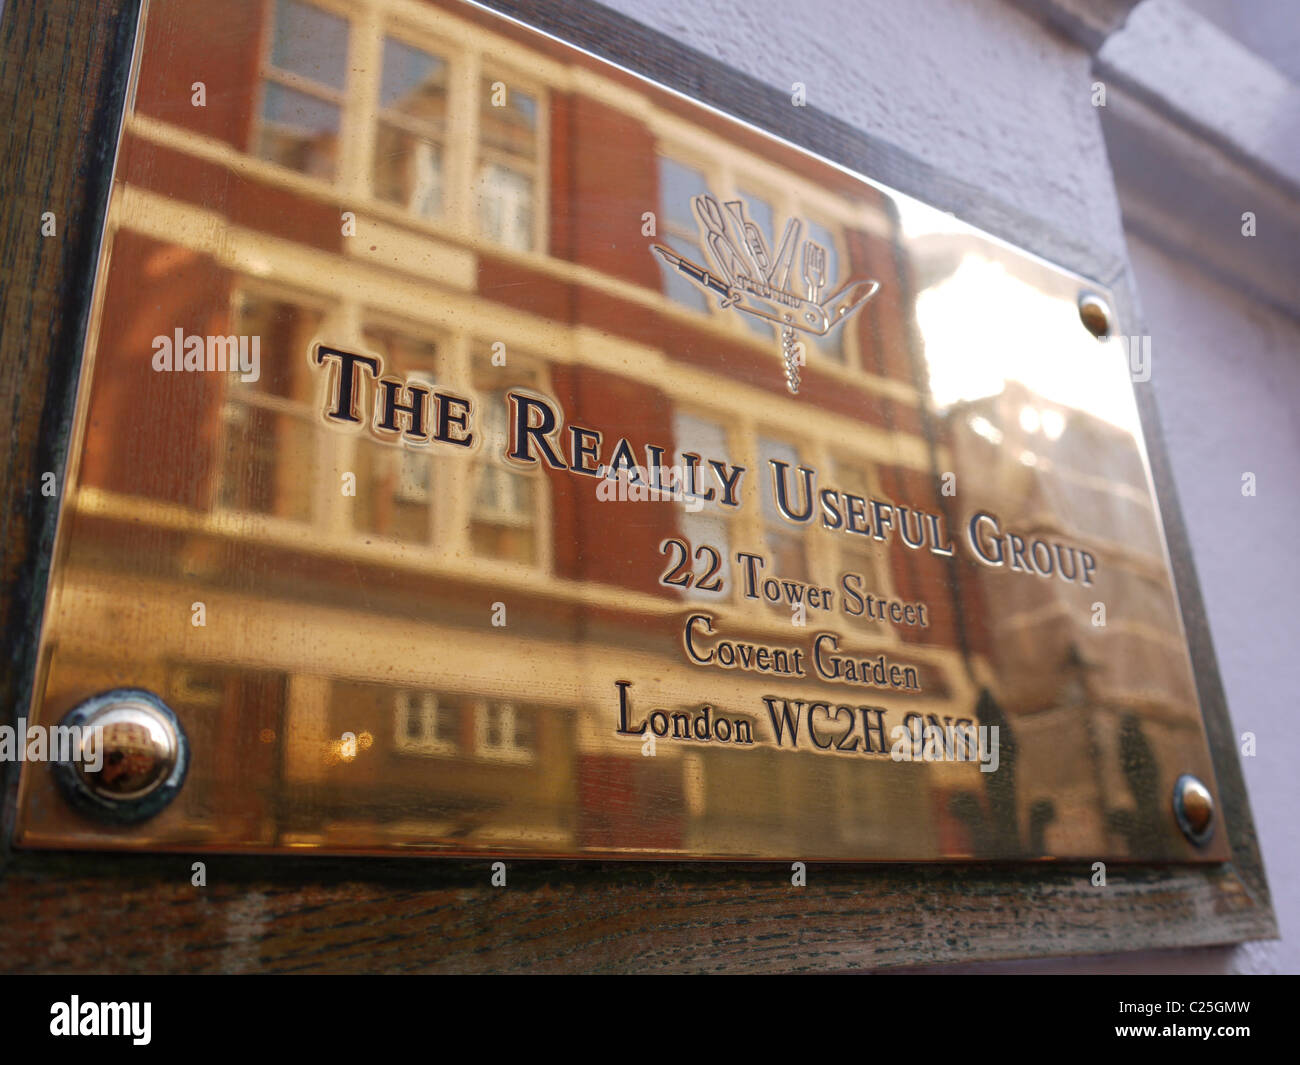 El grupo realmente útil placa de latón, Londres, Gran Bretaña. Foto de stock